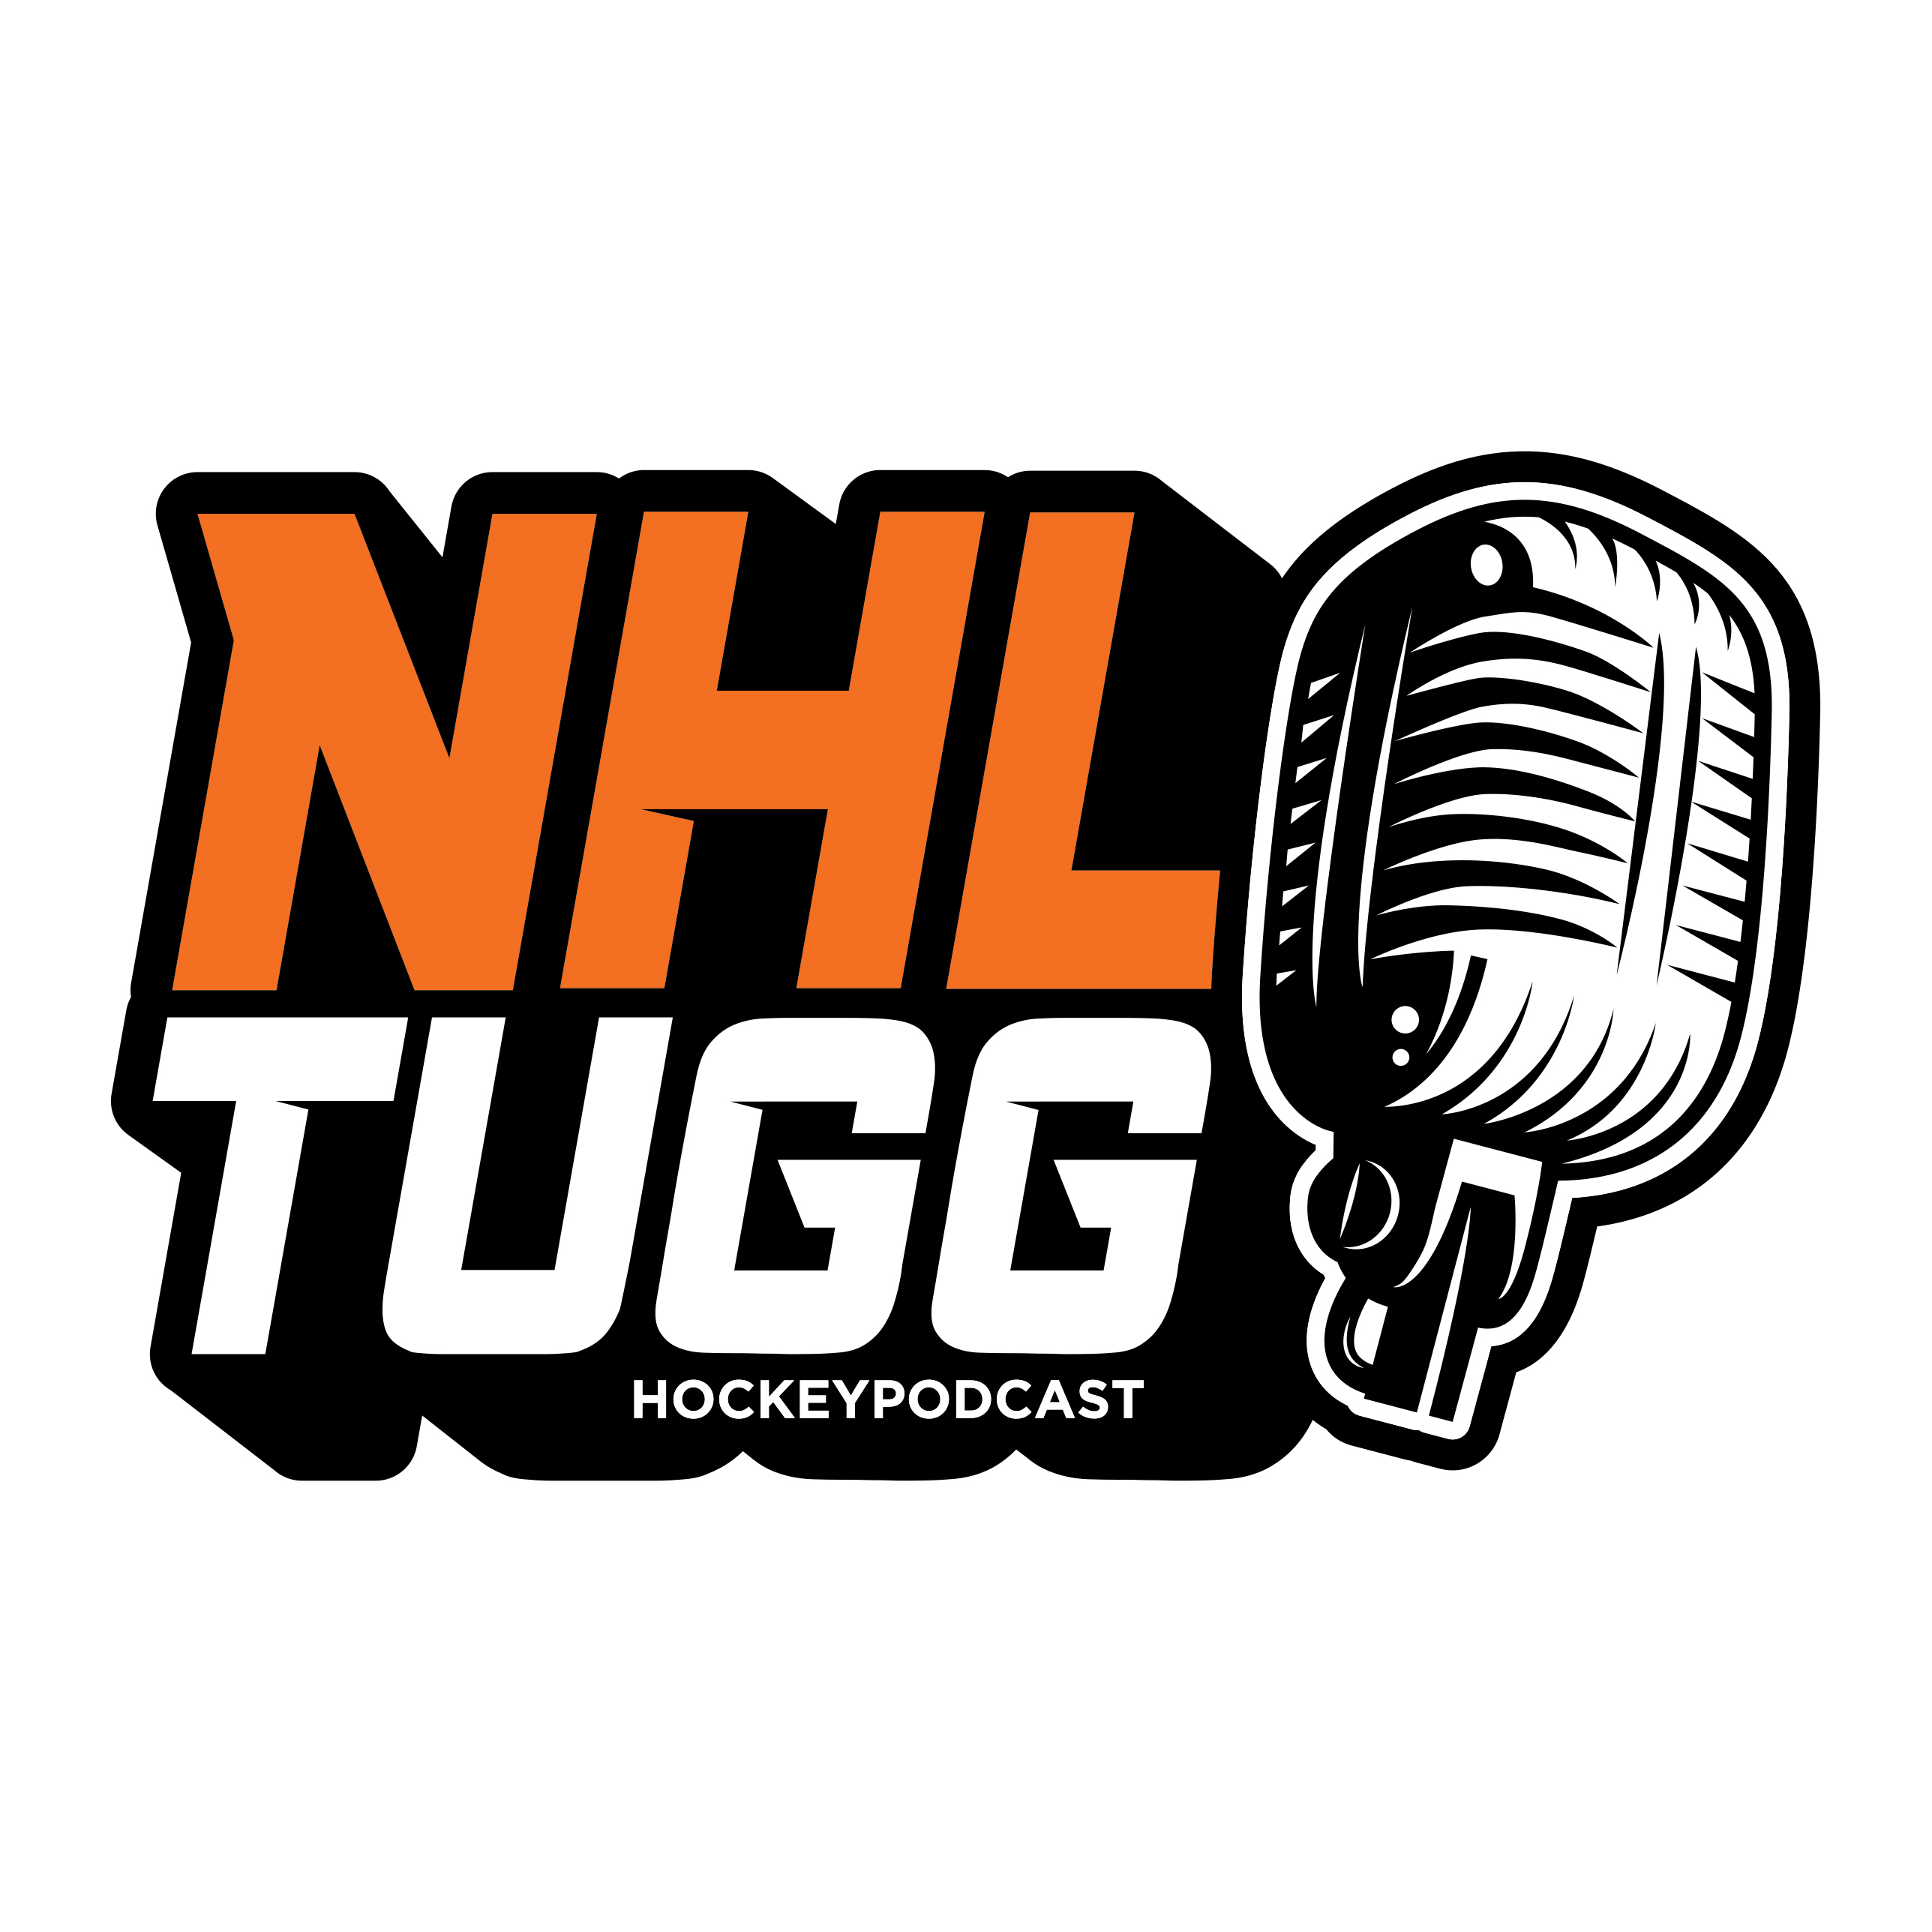 NHL-Tugg avsnitt 107 ”Mest överskattad i hela ligan”